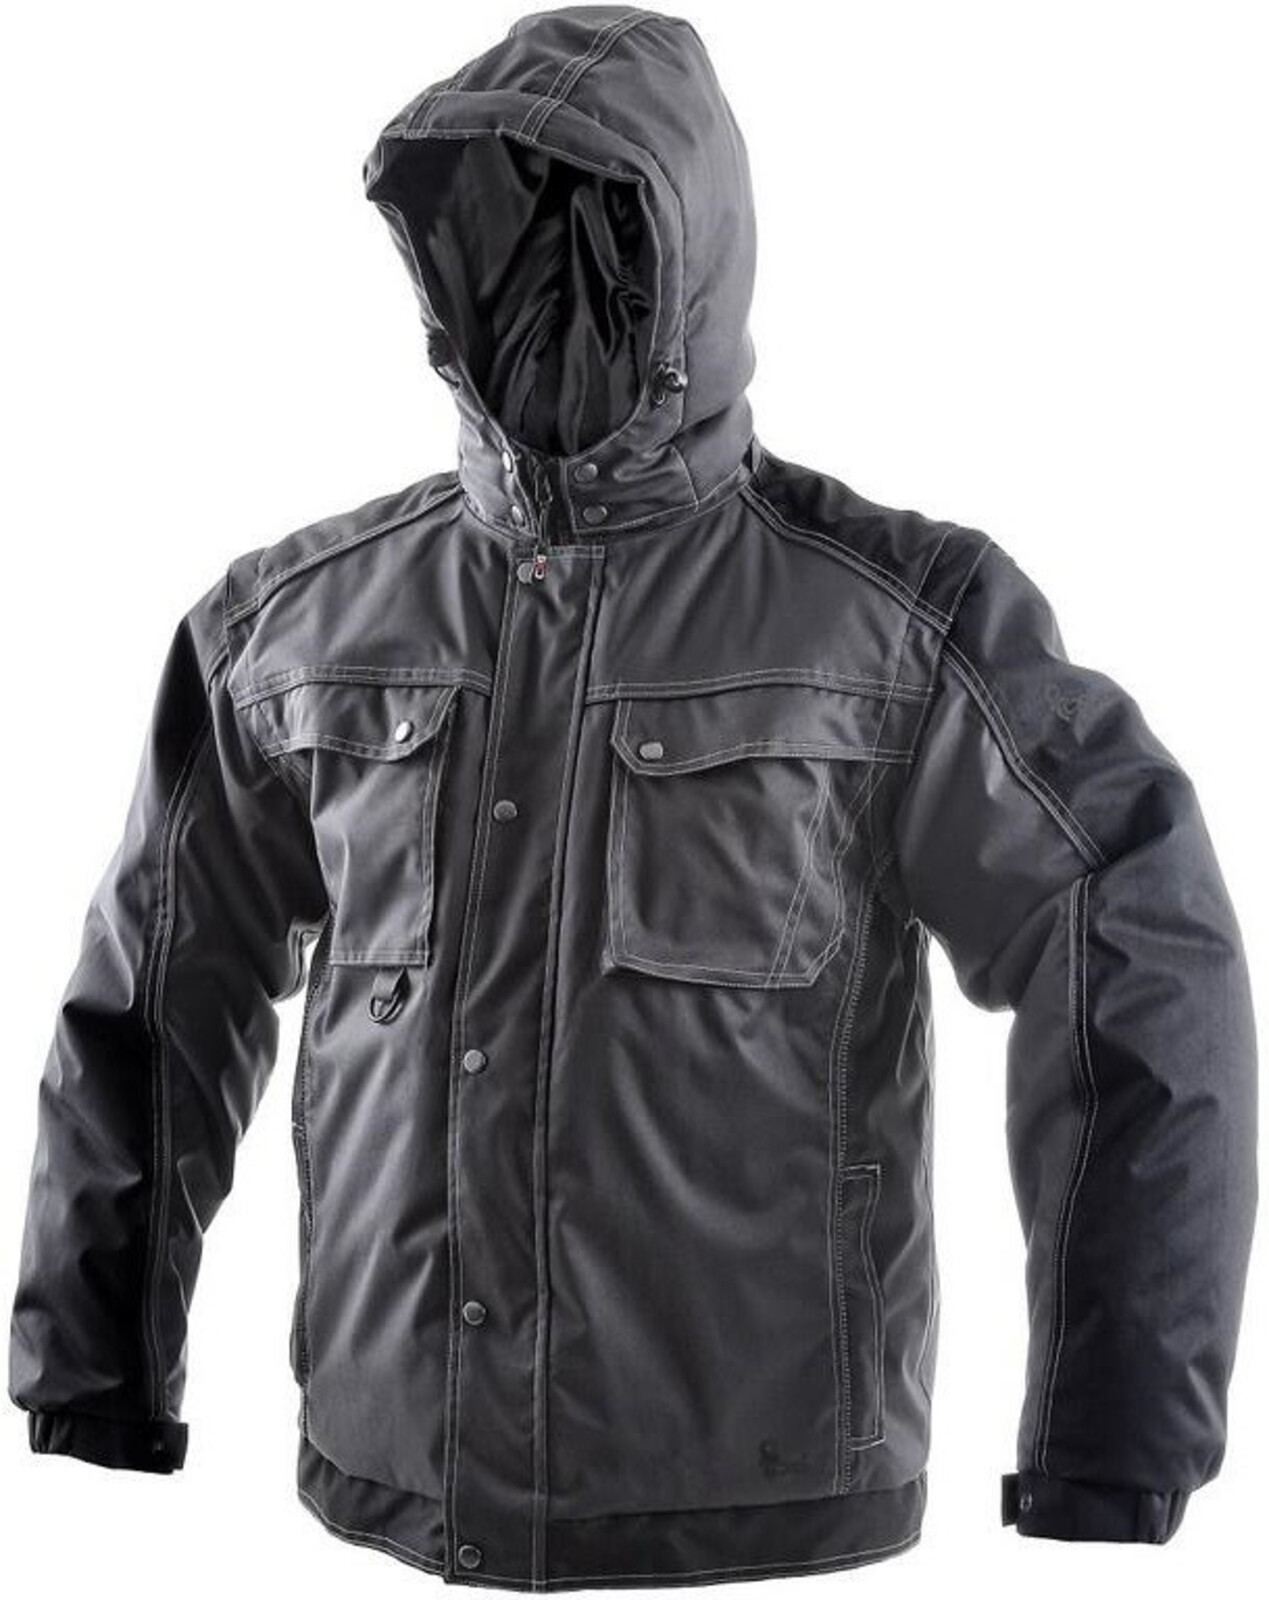 Pánska zimná bunda CXS Irvine 2v1 - veľkosť: 5XL, farba: sivá/čierna